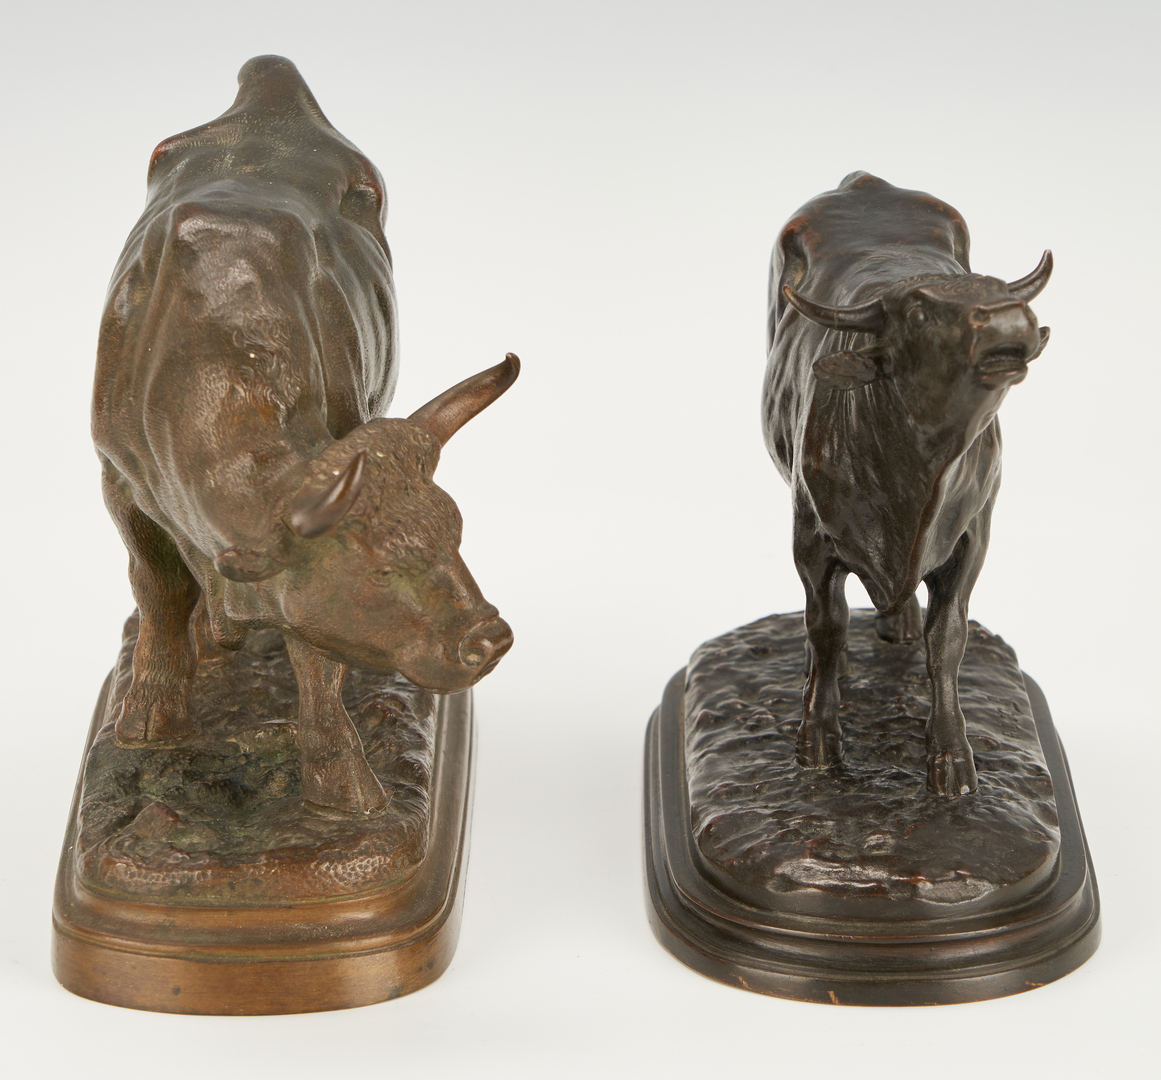 Lot 476: After Rosa Bonheur, 2 Bronze Bull Sculptures